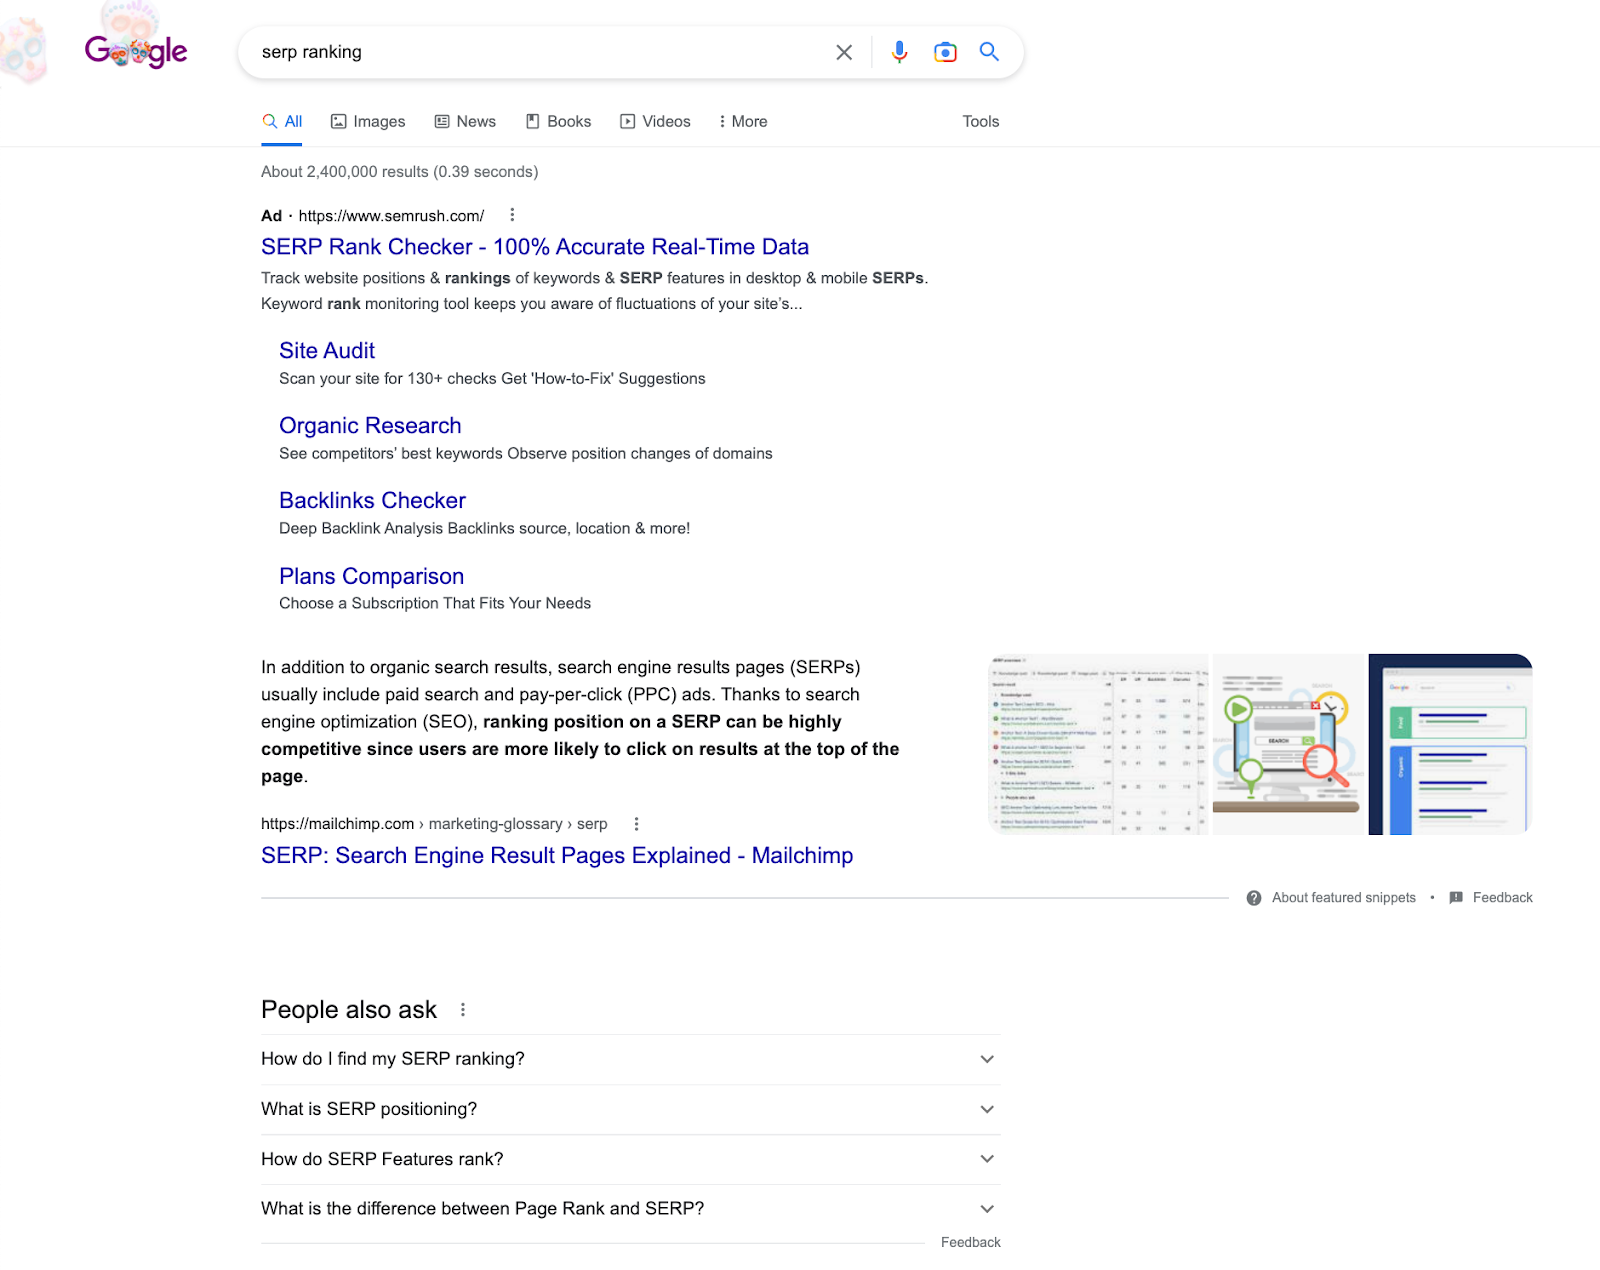 لقطة شاشة لاستعلام البحث "تصنيف SERP" على Google. ويتضمن نتائج البحث ، ومقتطفًا مميزًا ، وقسم "الأشخاص يسألون أيضًا" ، وهي أسئلة أخرى متكررة ذات صلة.